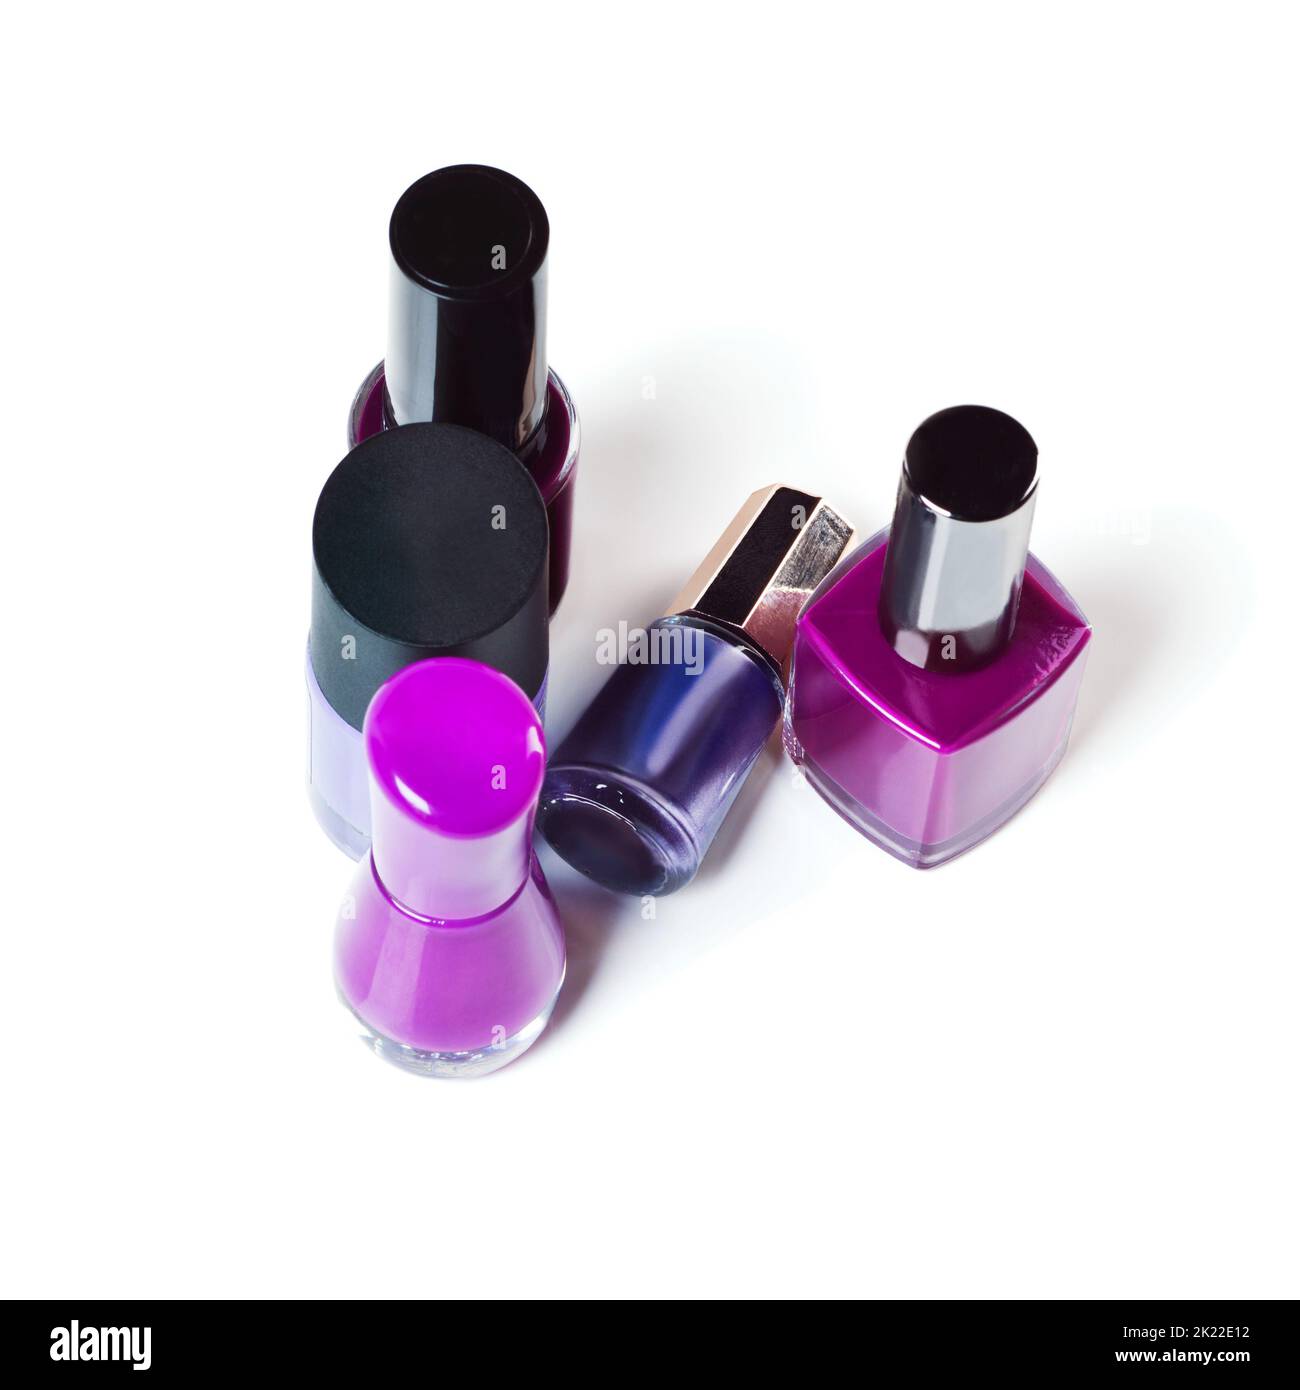 Füge etwas Lila in deine Schönheit ein. Studioaufnahme von bunten Nagellack-Flaschen. Stockfoto